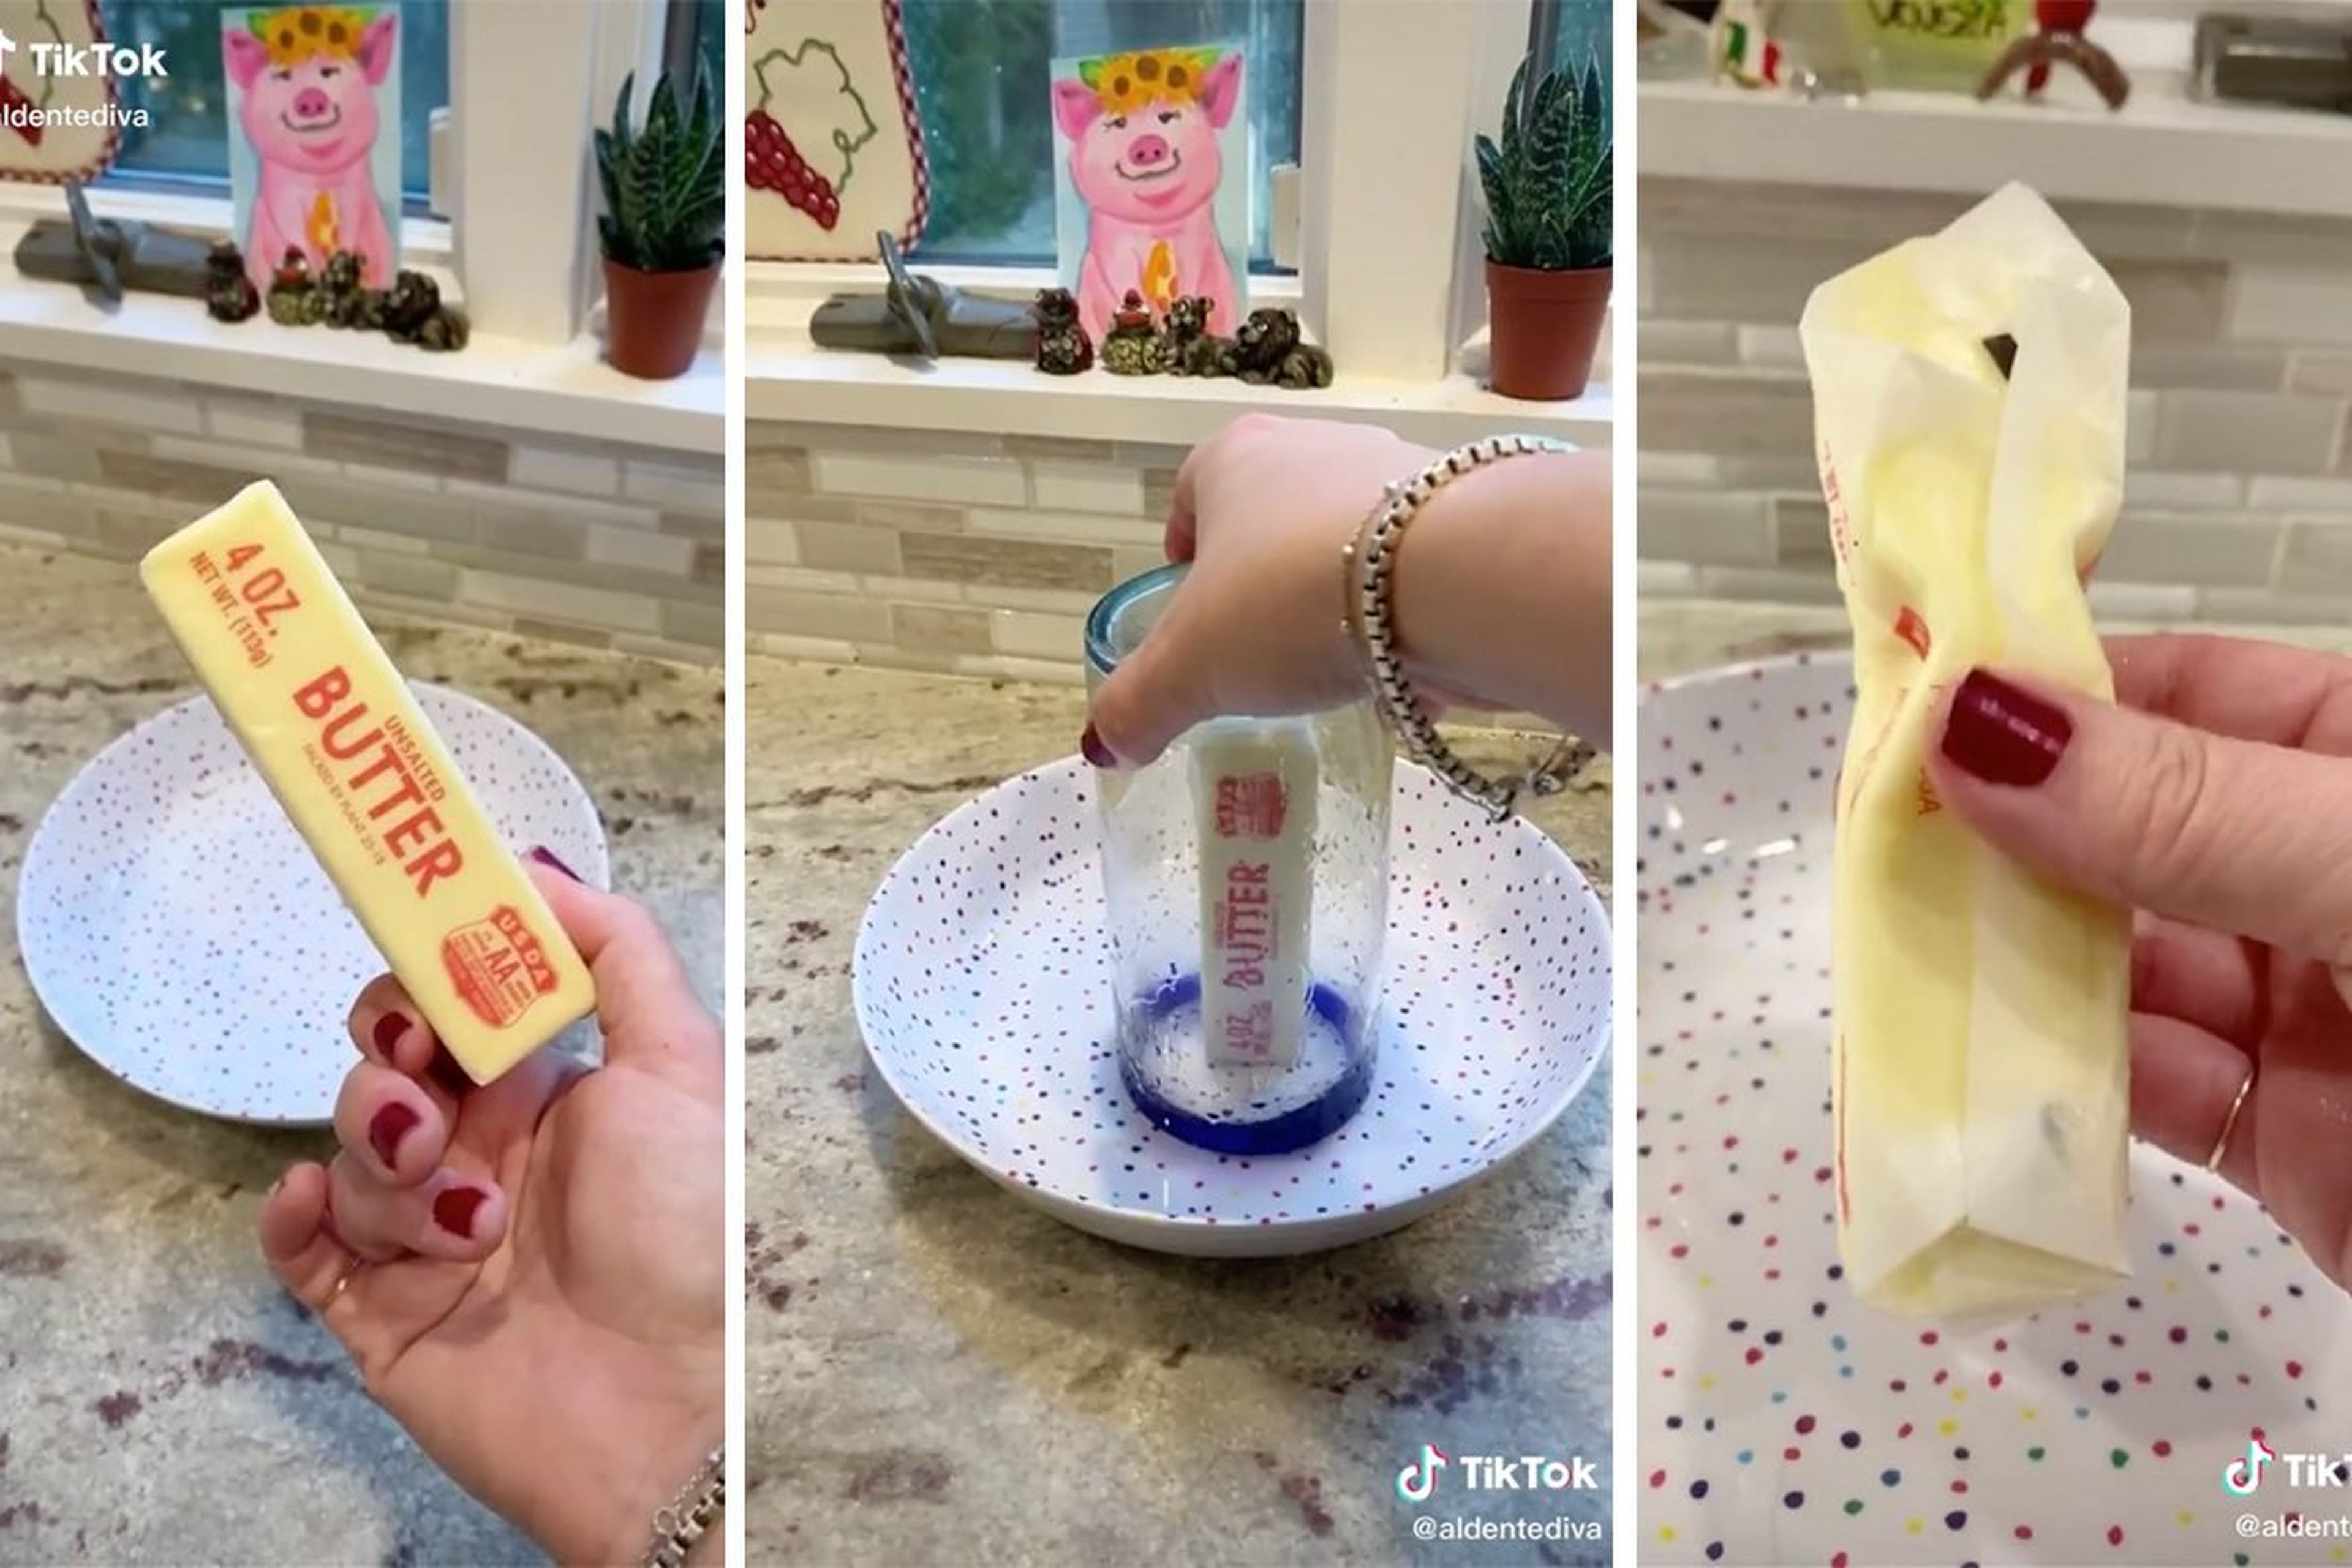 El truco viral de TikTok para derretir mantequilla